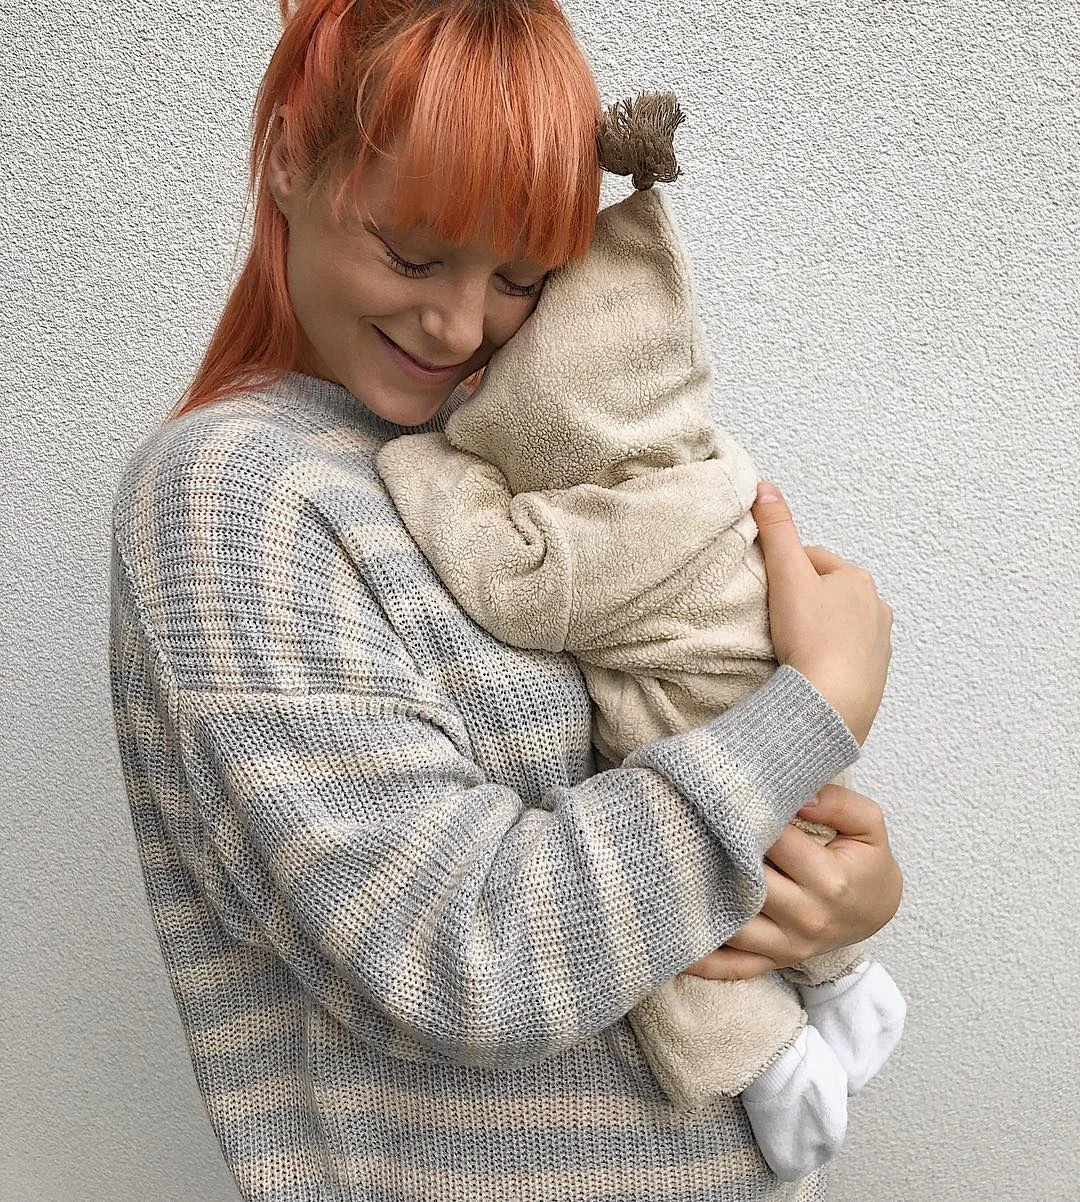 Світлана Тарабарова засипала Instagram солодкими фото маленького синочка - фото 404331